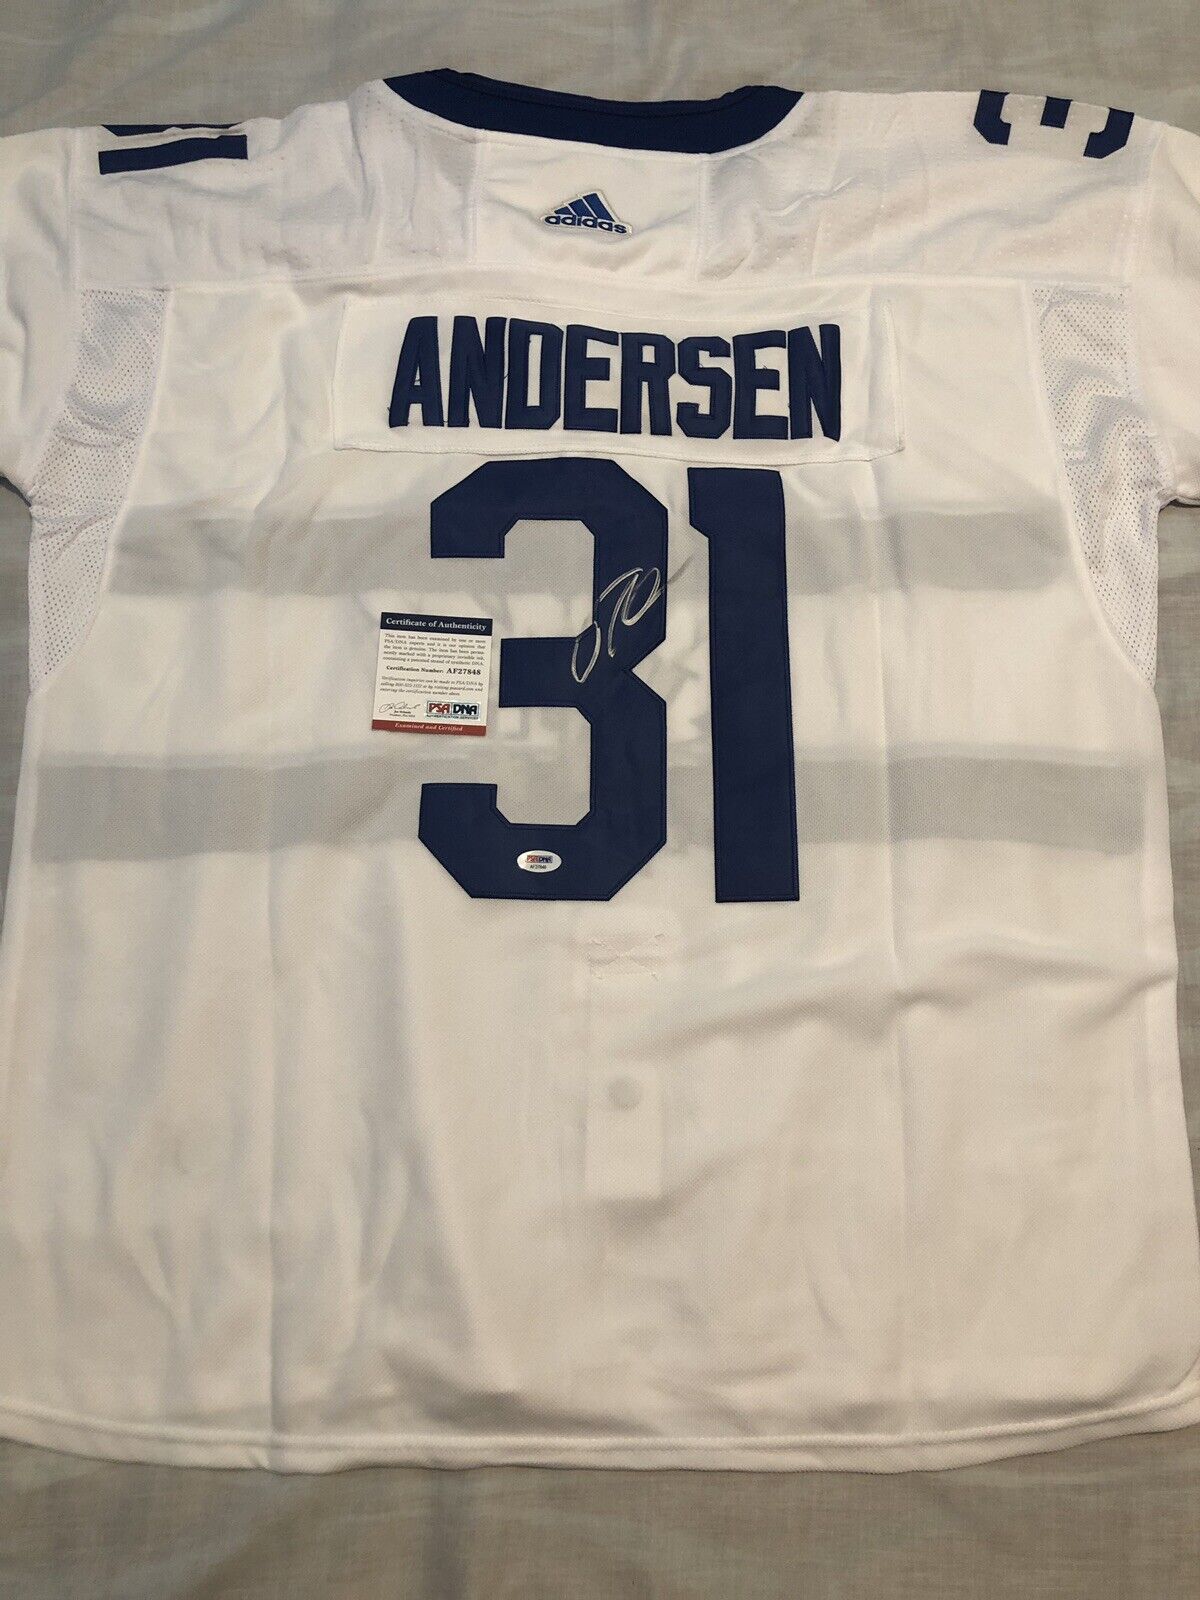 Frederik Andersen Signed St. Pats Maples Leafs Jersey (JSA COA)